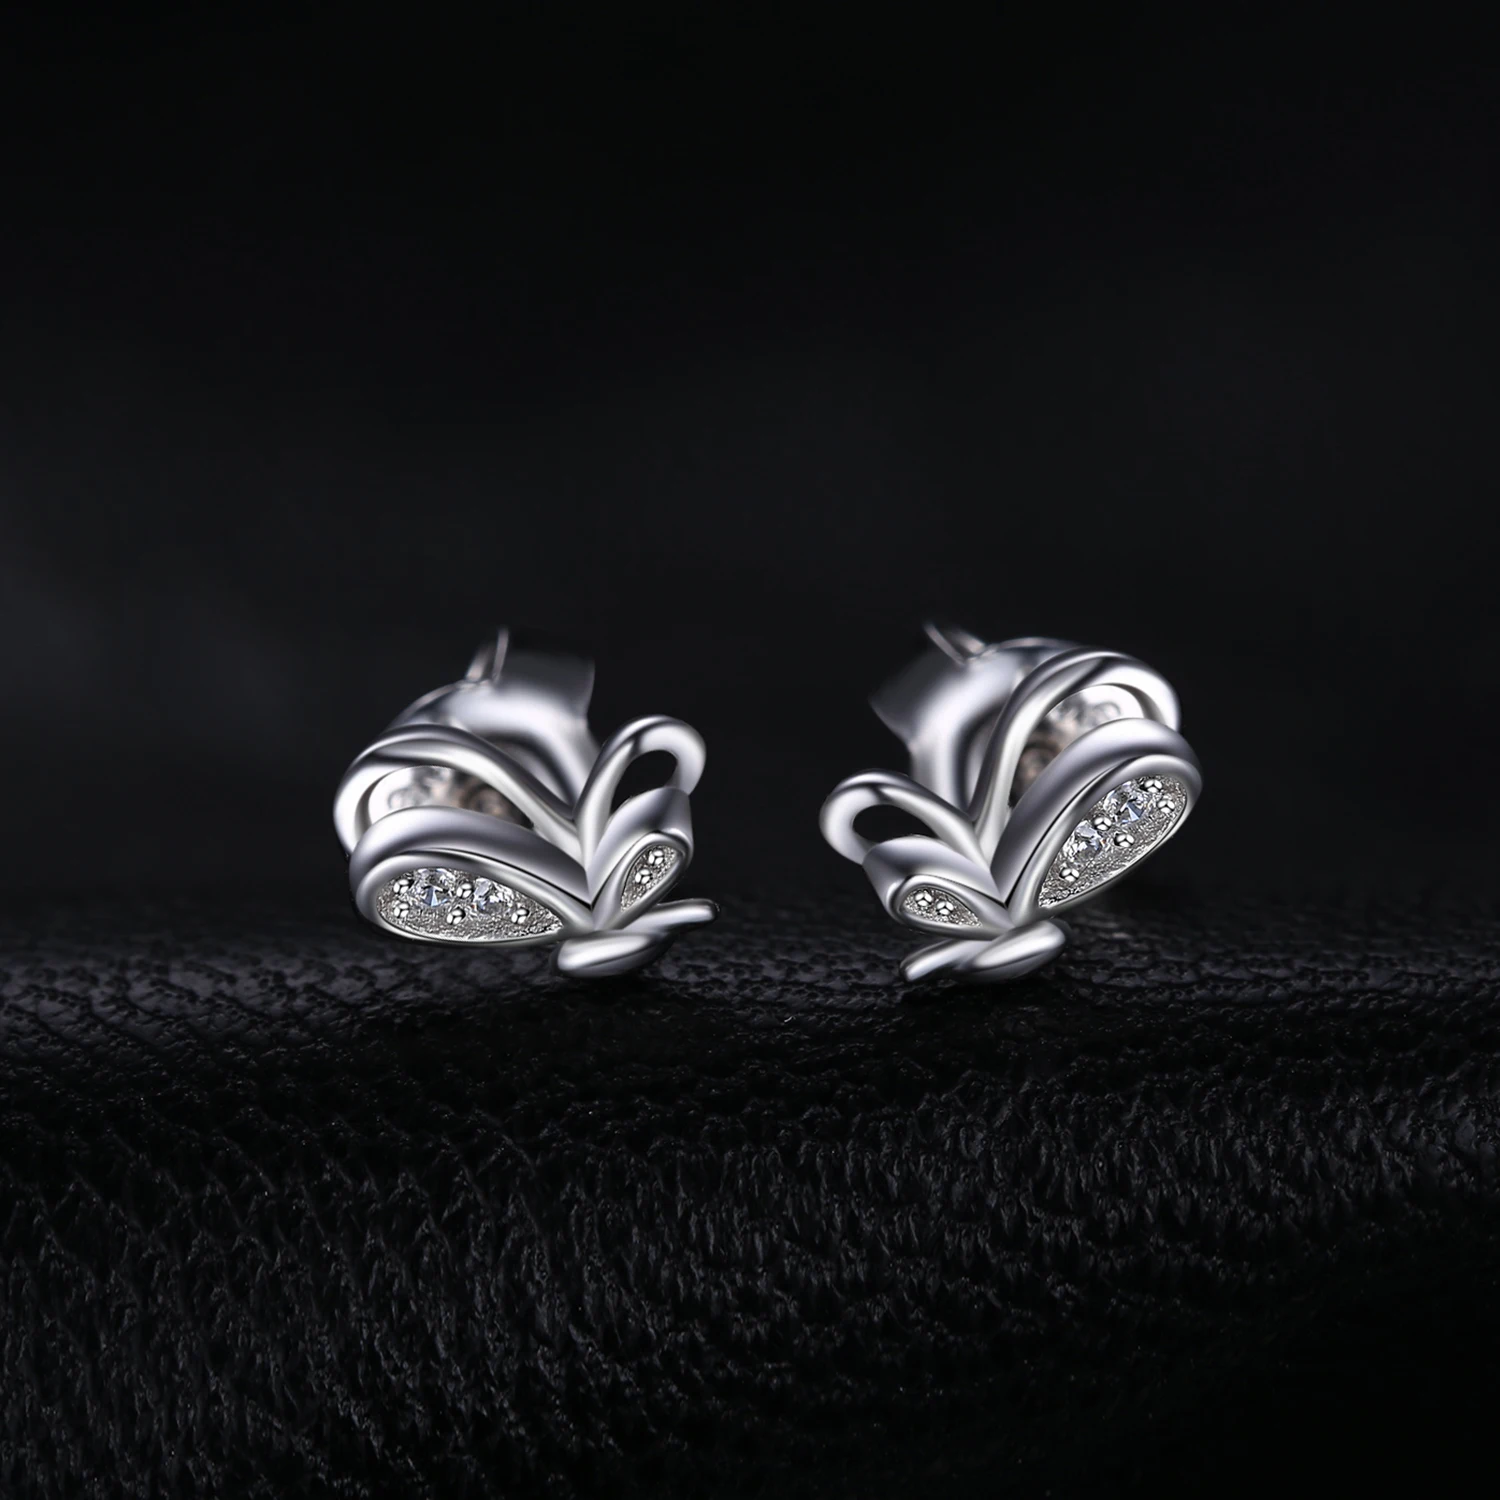 JewelryPalace высокое качество кубического циркония Танцы бабочка серьги 925 пробы серебро ювелирных украшений подарок для Для женщин Мода